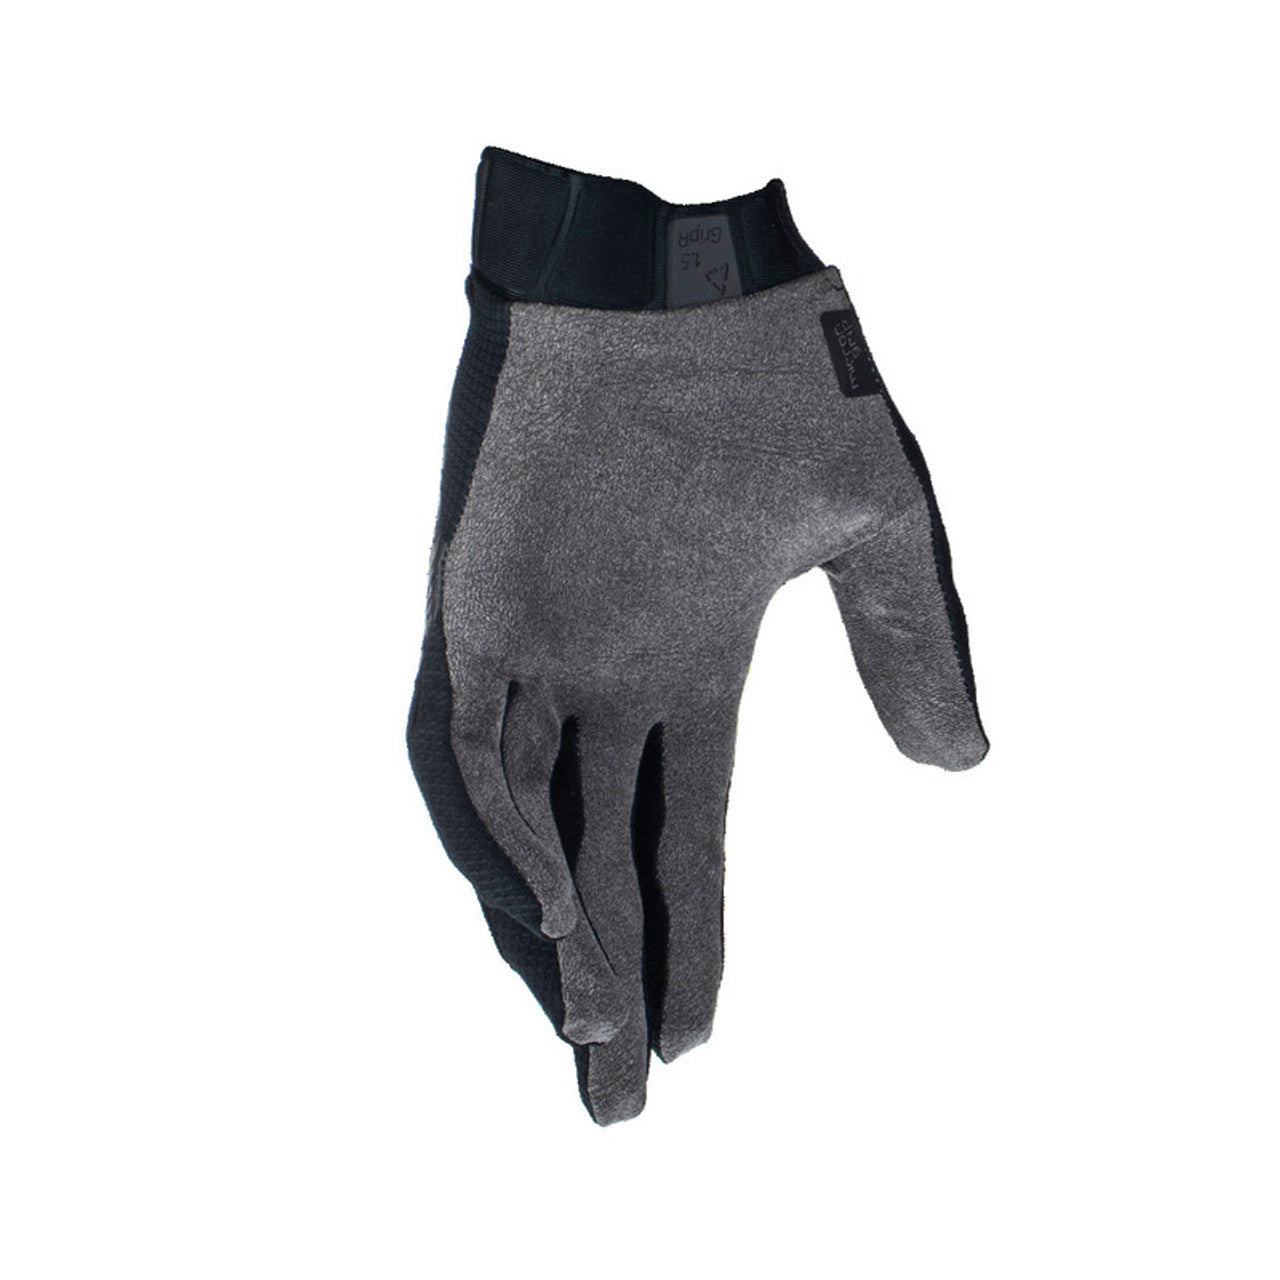 Leatt Moto 1.5 GRIPR MX24 Gloves - Stealth